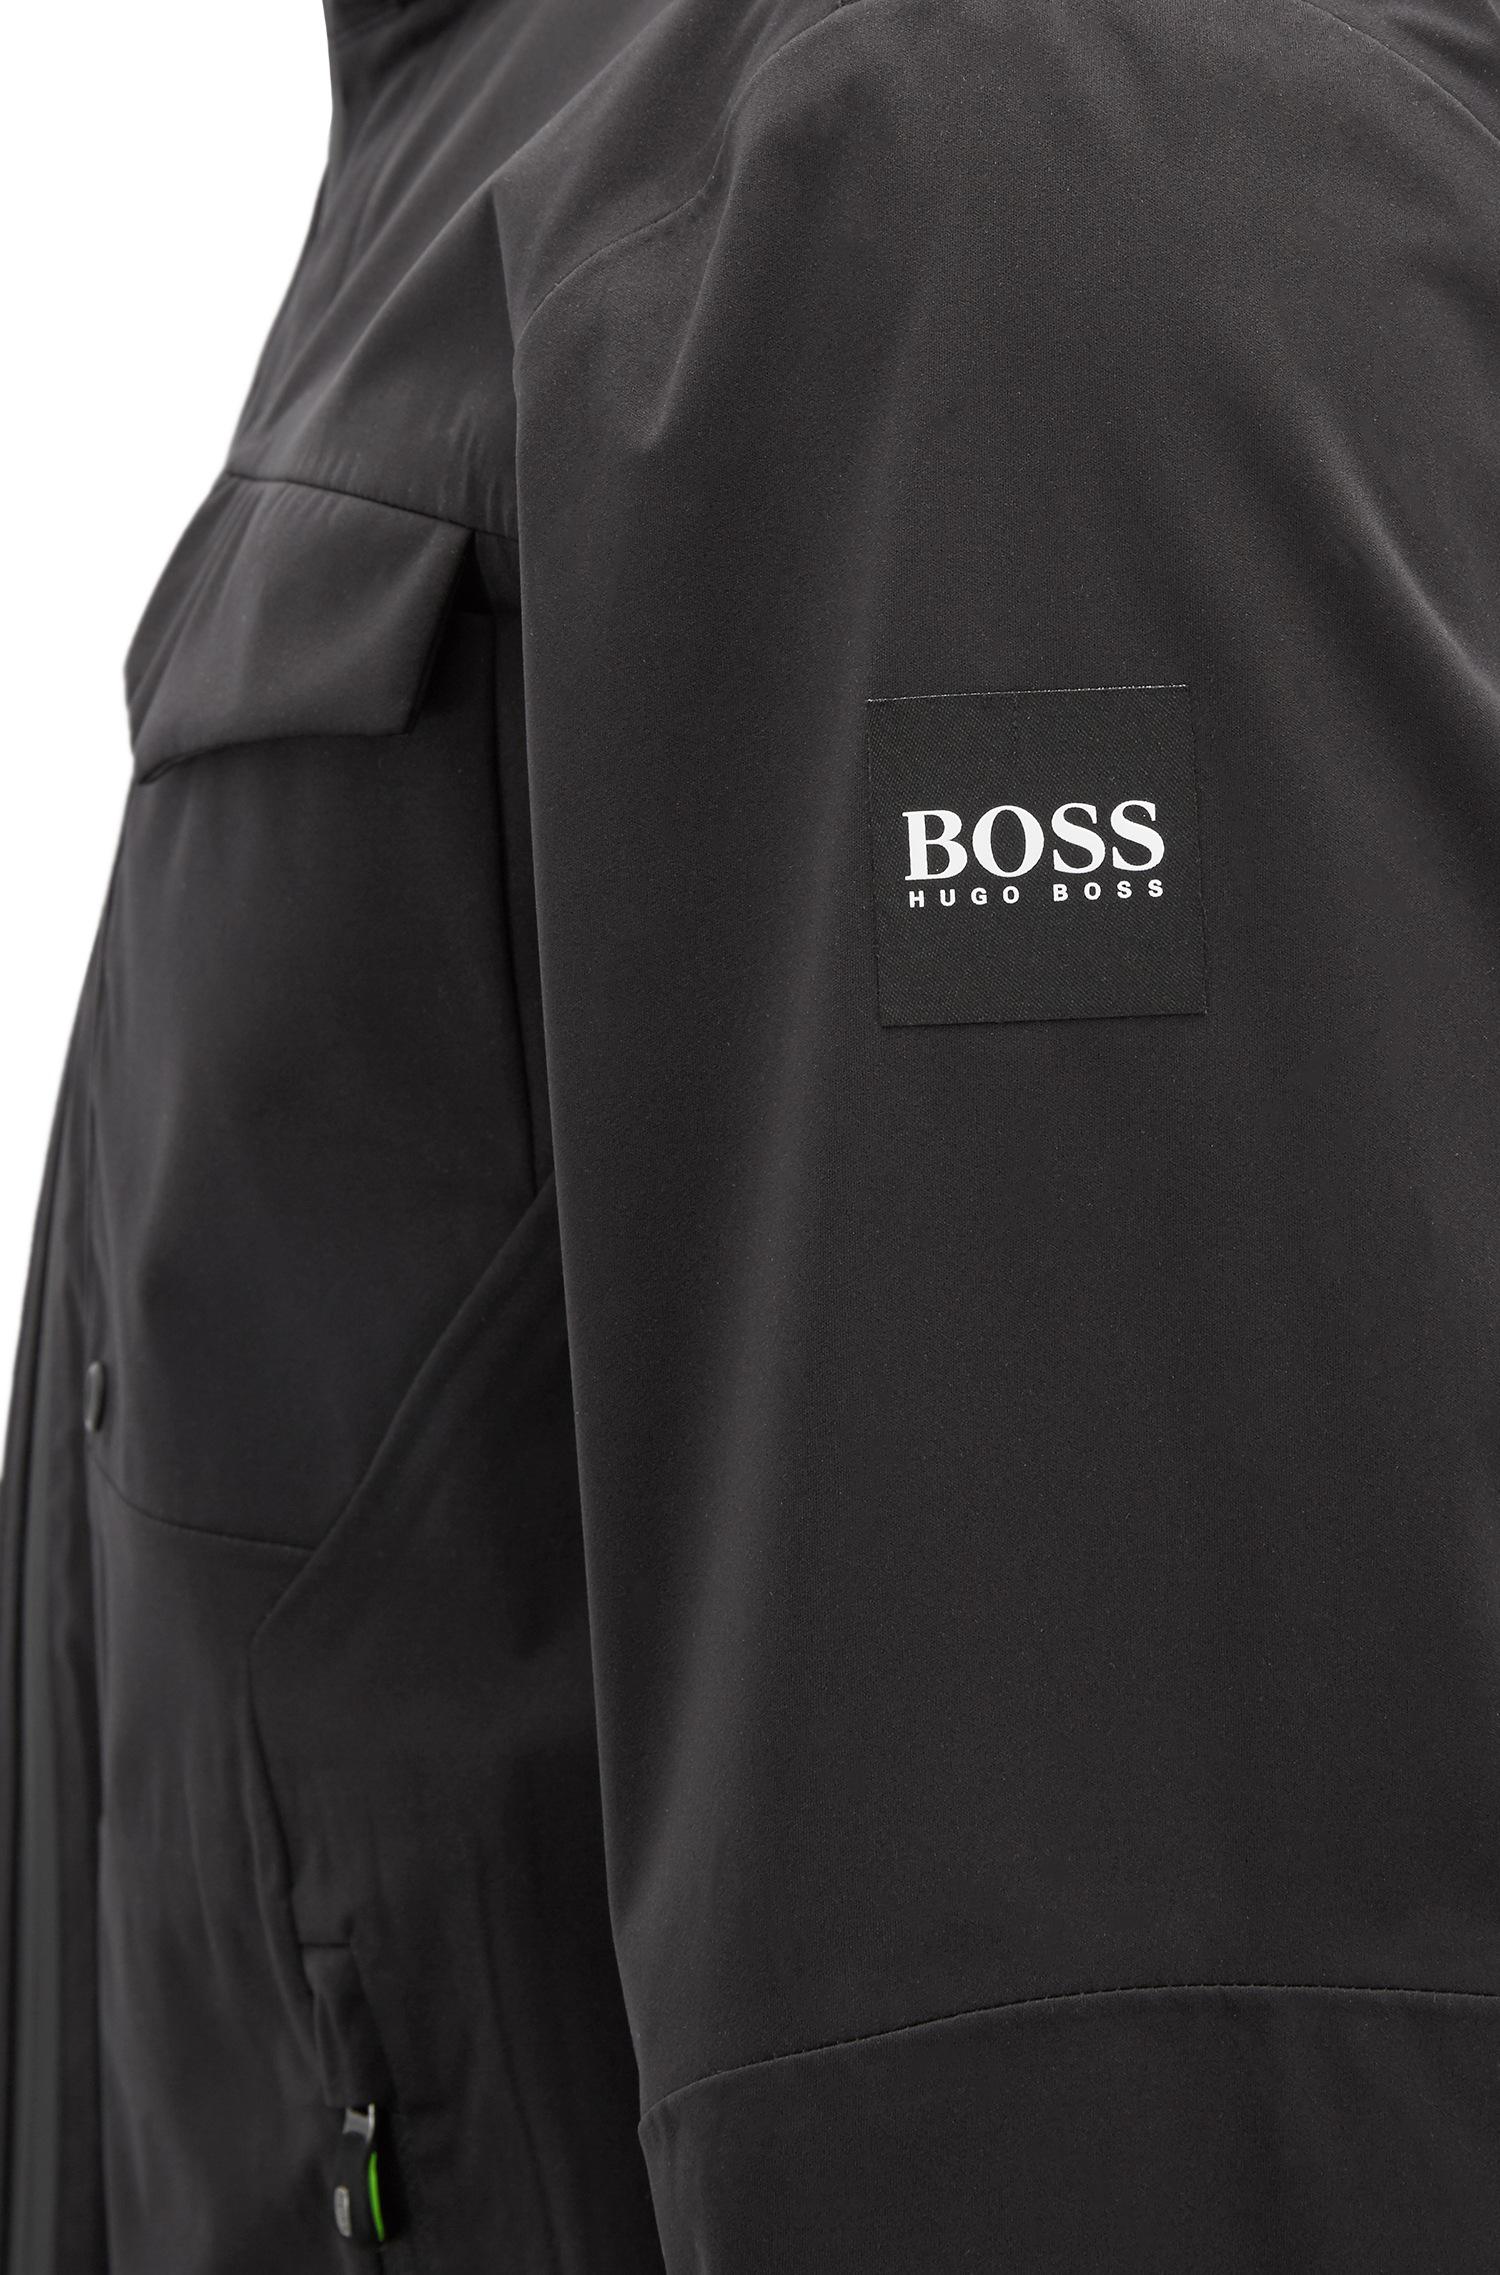 BOSS by Hugo Boss Synthetic Waterproof 